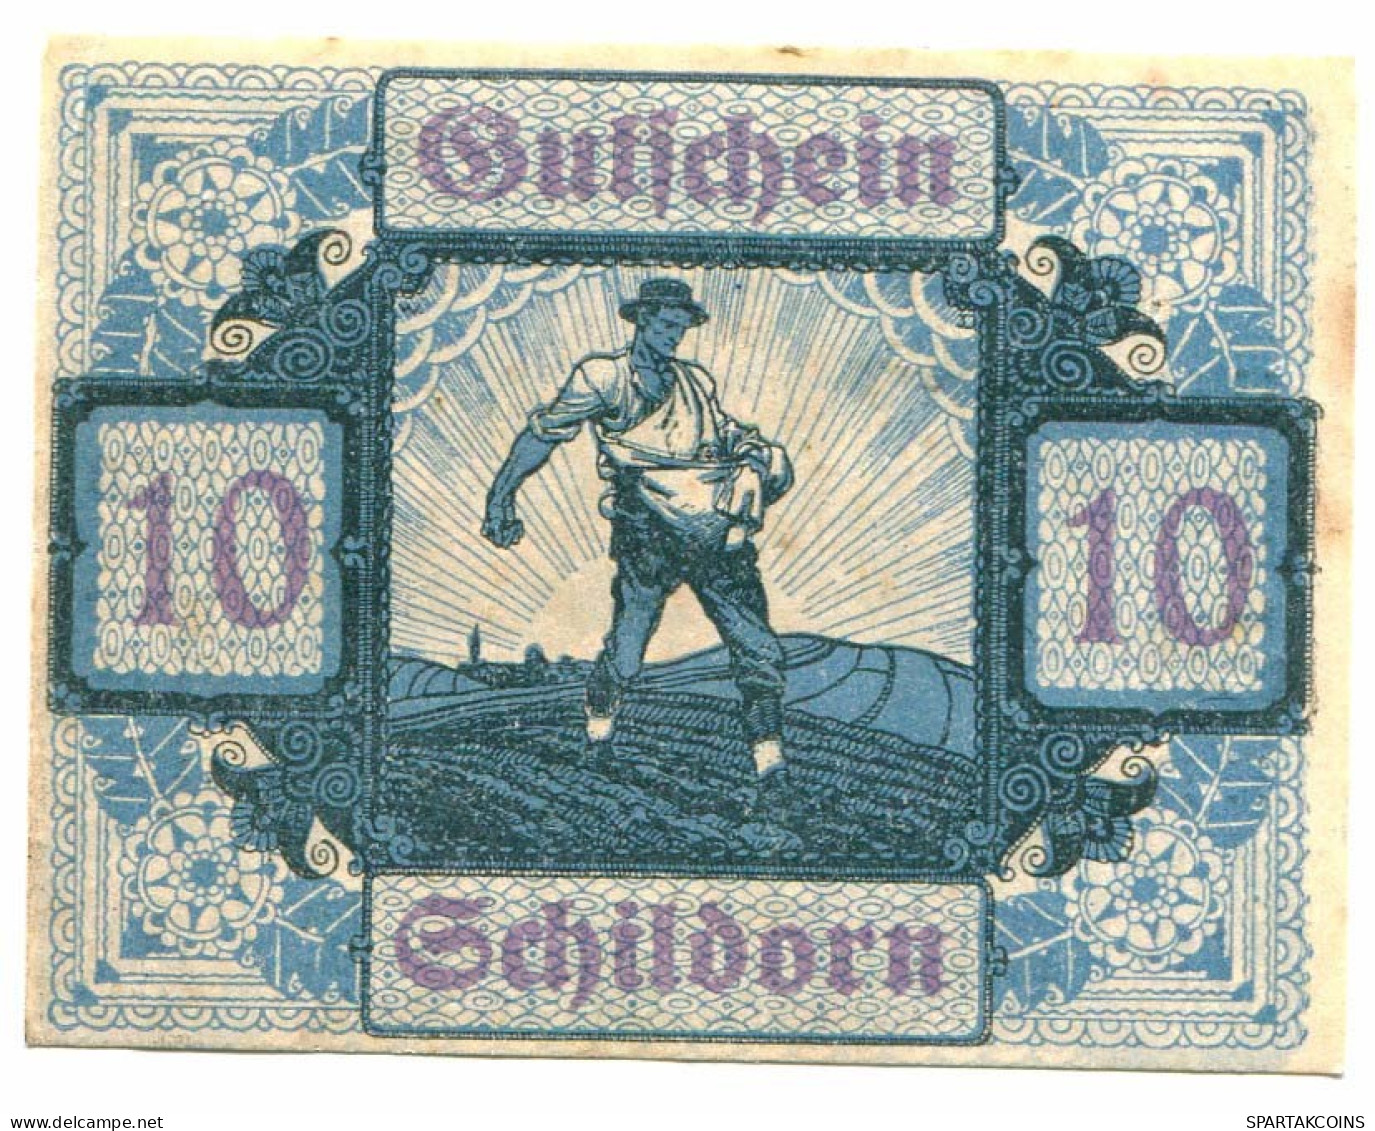 10 HELLER 1920 Gemeinde Schildorn Österreich UNC Notgeld Papiergeld Banknote #P10249 - [11] Local Banknote Issues